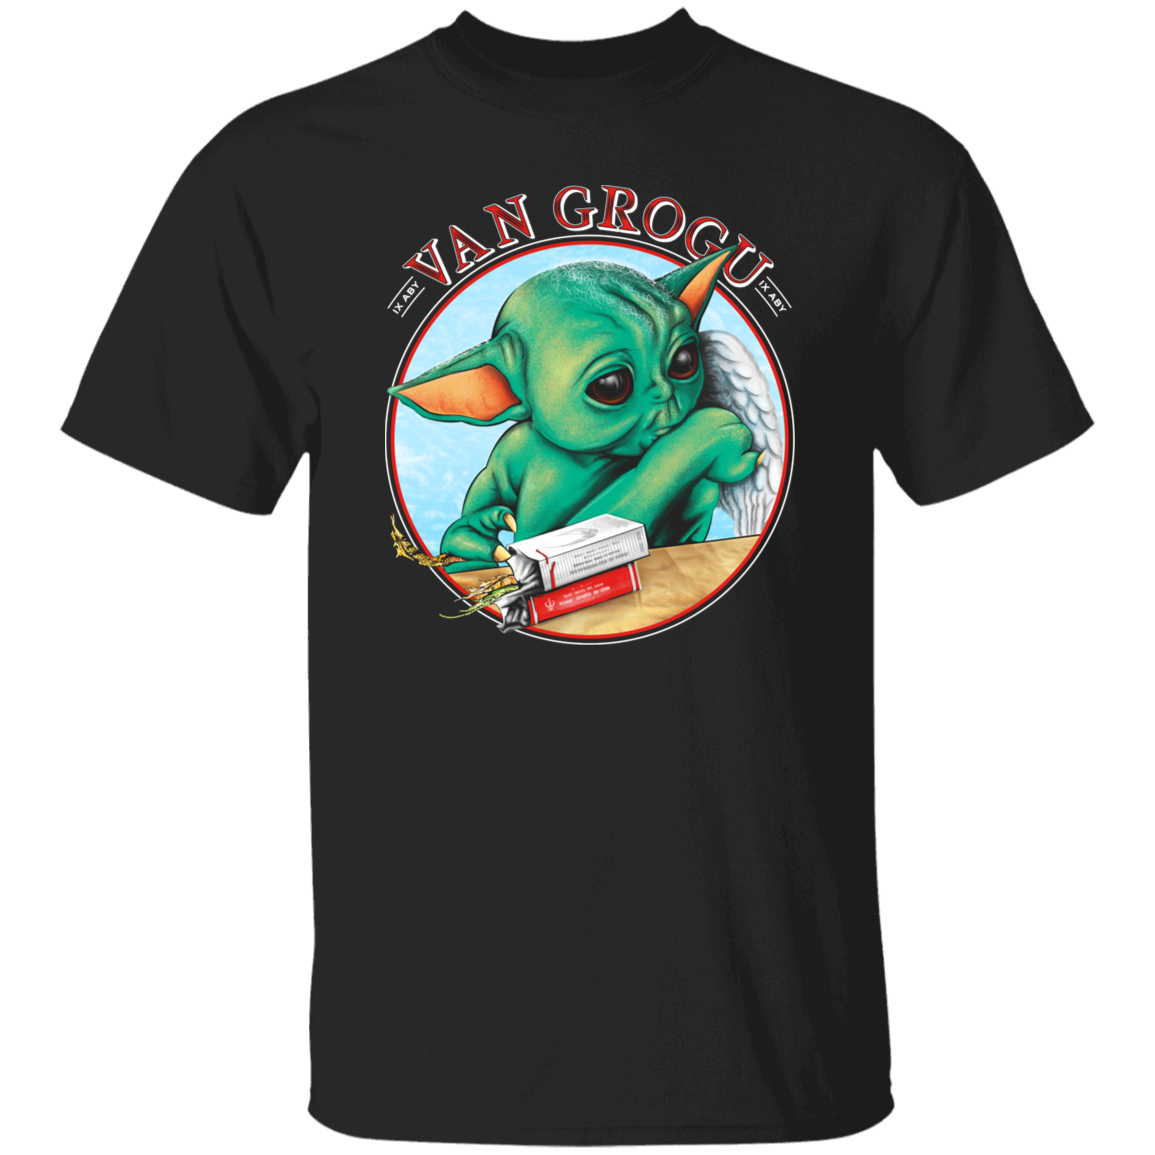 VAN GROGU T-Shirt